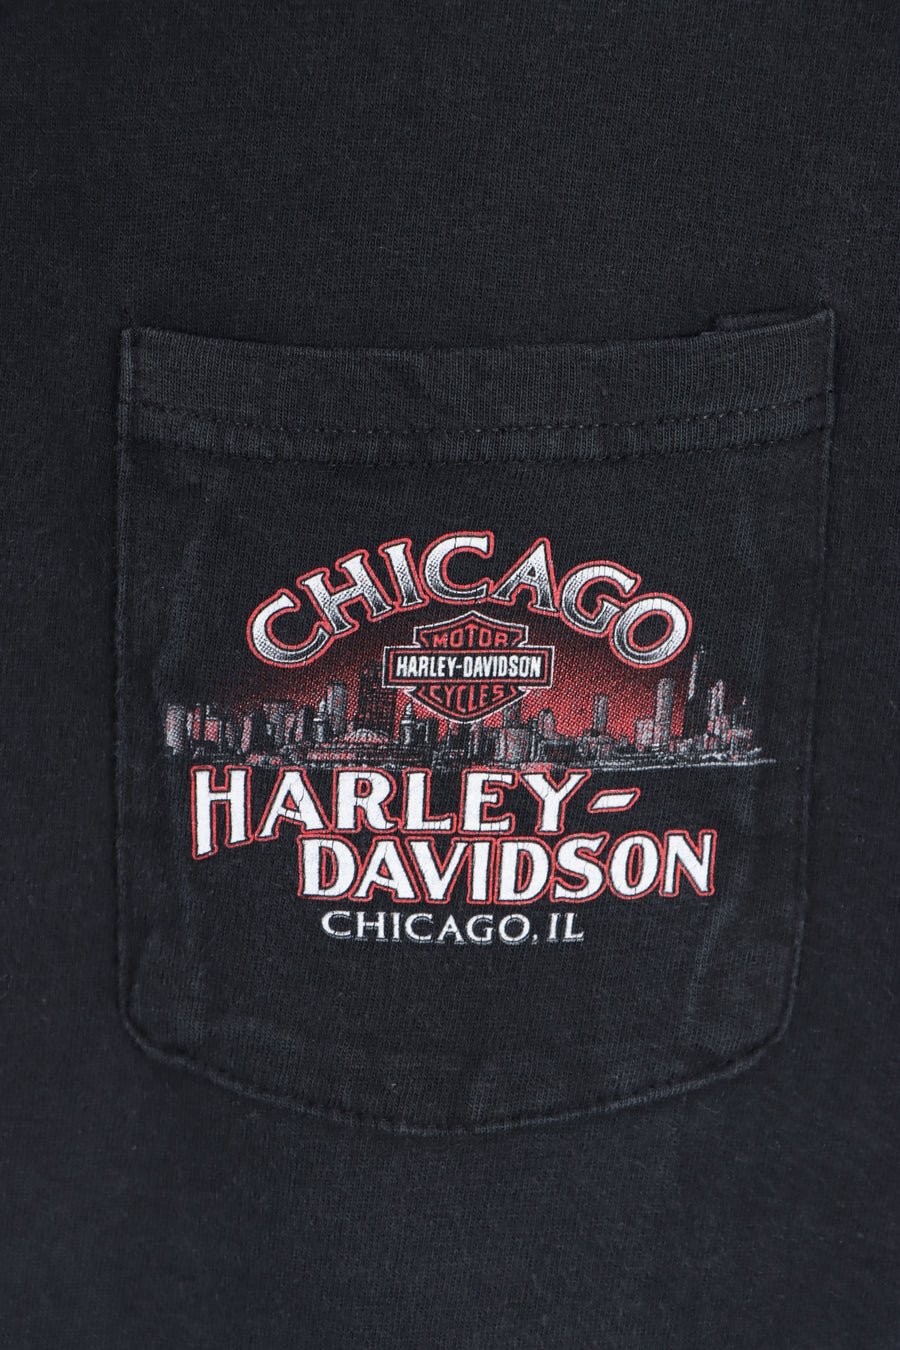 HARLEY DAVIDSON Chicago Smoking Gun Front Back Tee USA Made (L)